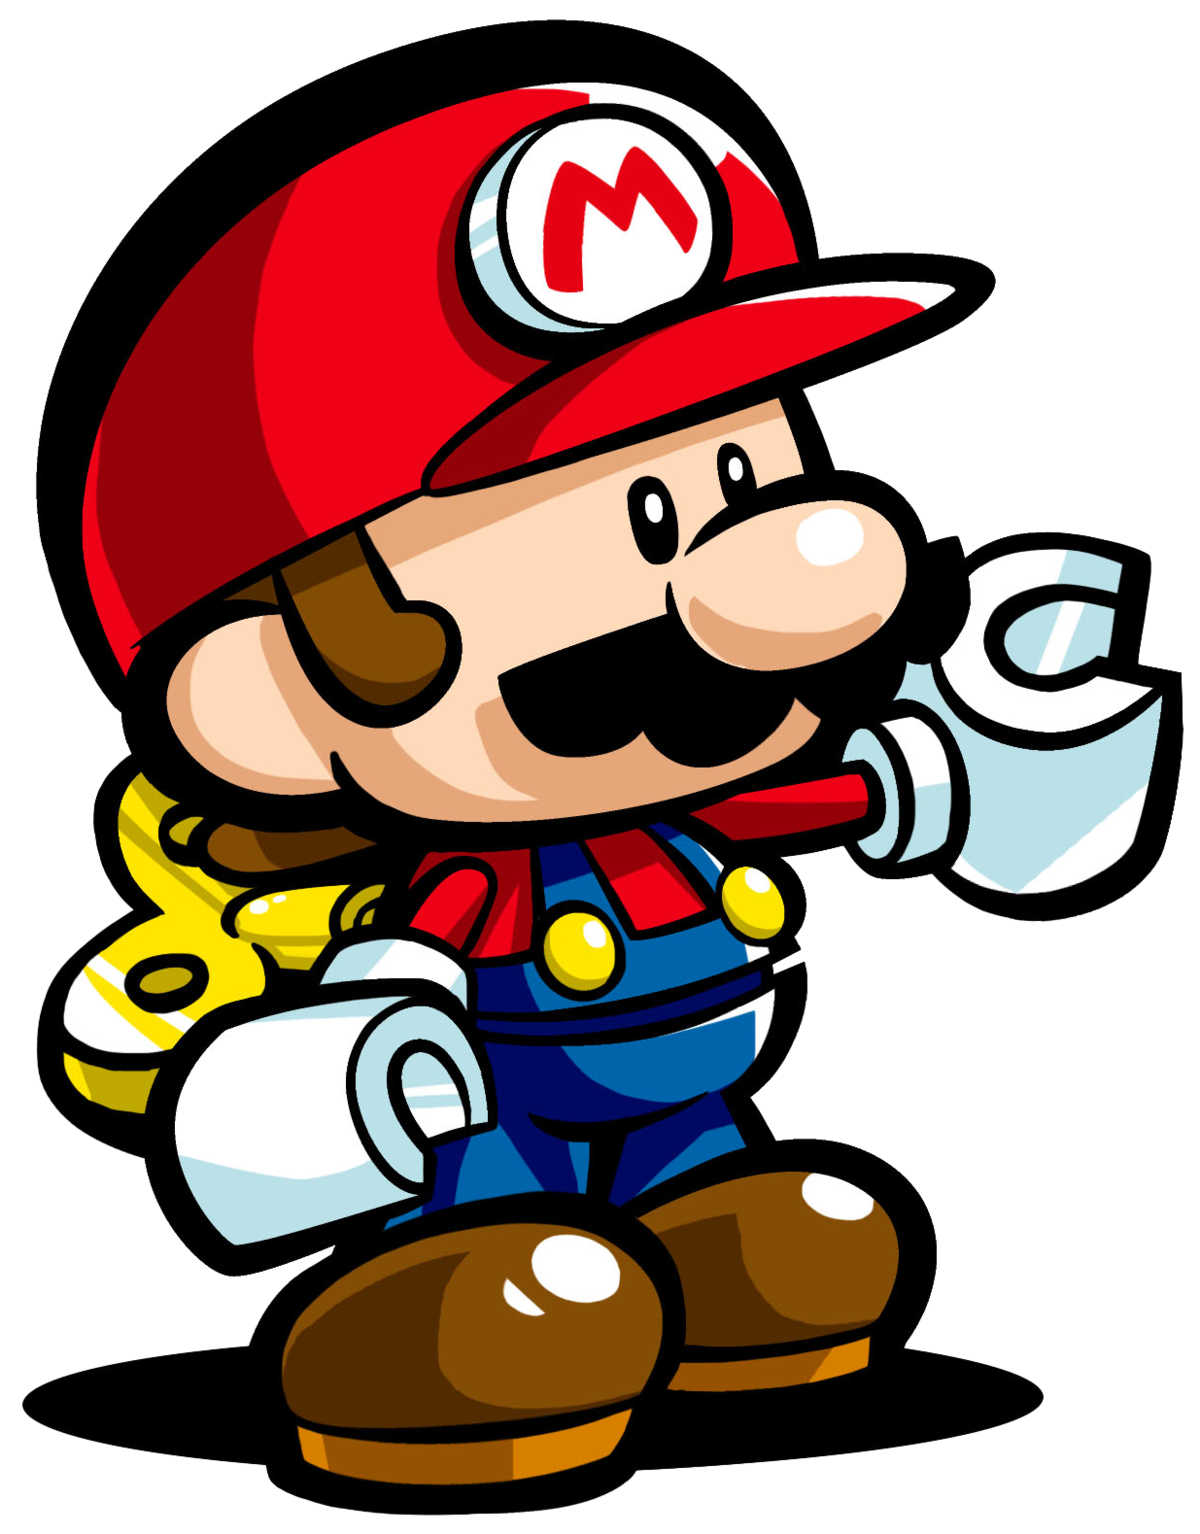 Diddy Kong - Super Mario Wiki, the Mario encyclopedia